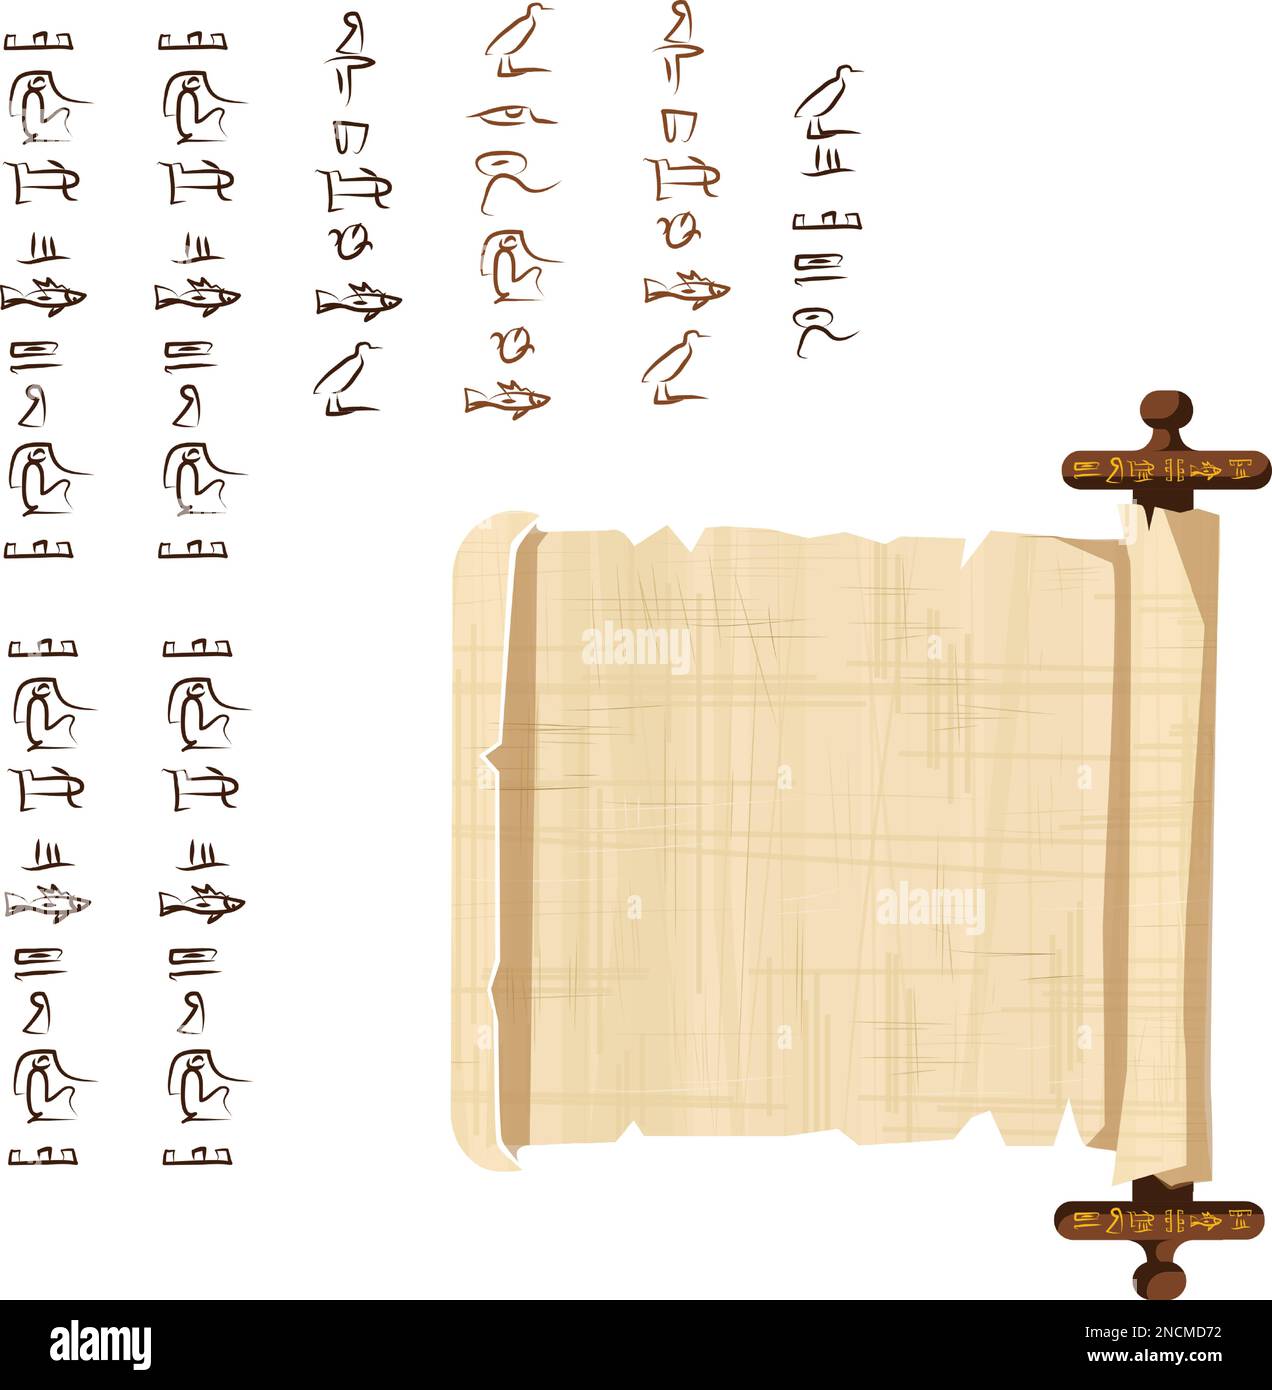 Alte ägyptische Papyrus-Schriftrolle mit Holzstäbchen-Cartoon-Vektordarstellung. Ägyptisches Kultursymbol, leeres, entfaltetes uraltes Papier zur Speicherung von Informationen mit Holzstäbchen, isoliert auf weißem Hintergrund Stock Vektor